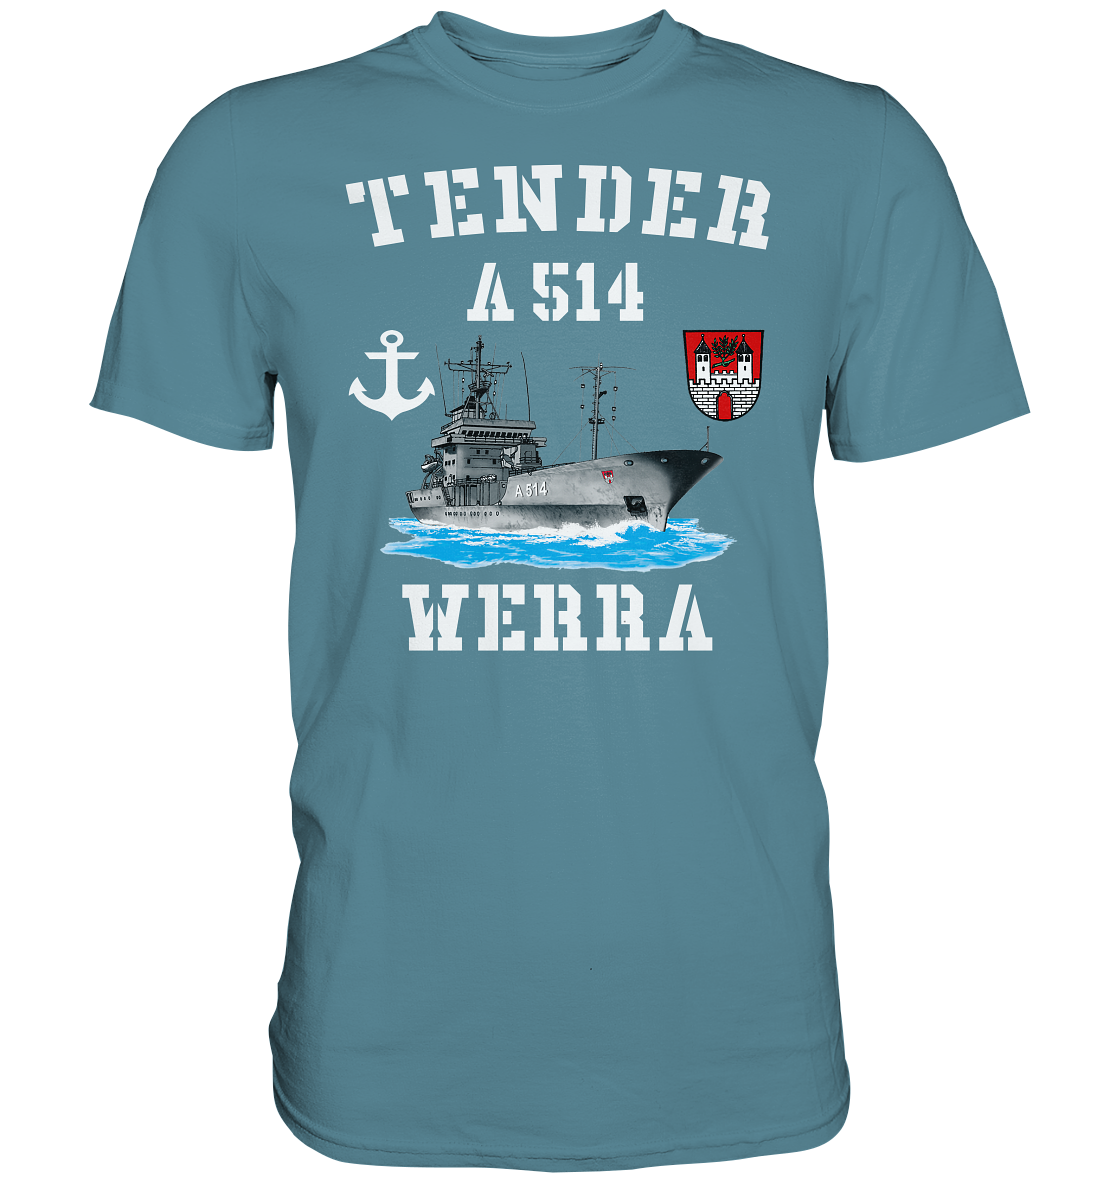 Tender A514 WERRA Anker - Premium Shirt